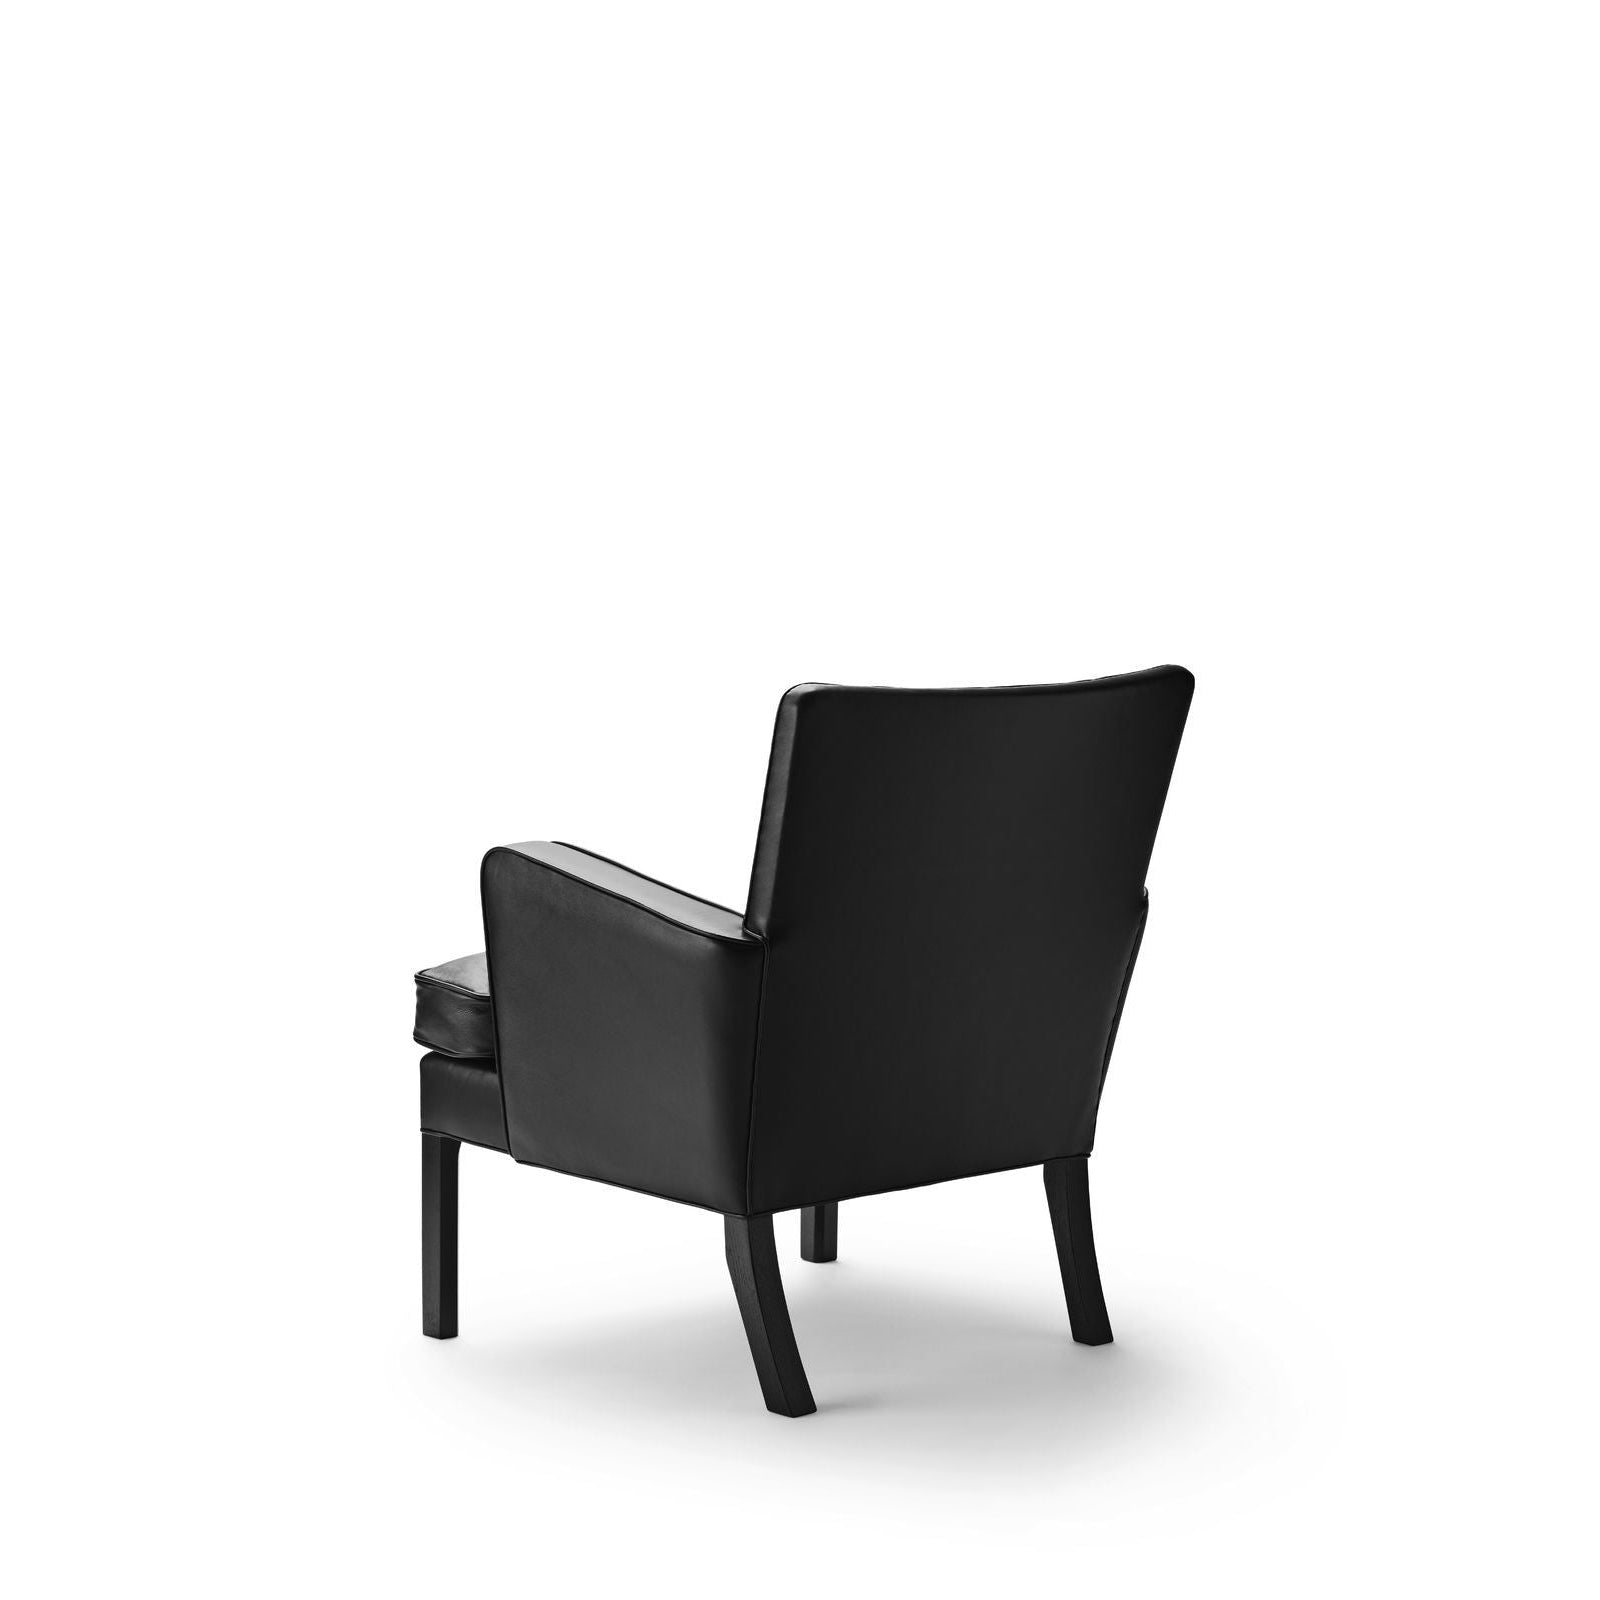 Carl Hansen Kk53130 Easy Chair, Black Oak/Black Leather